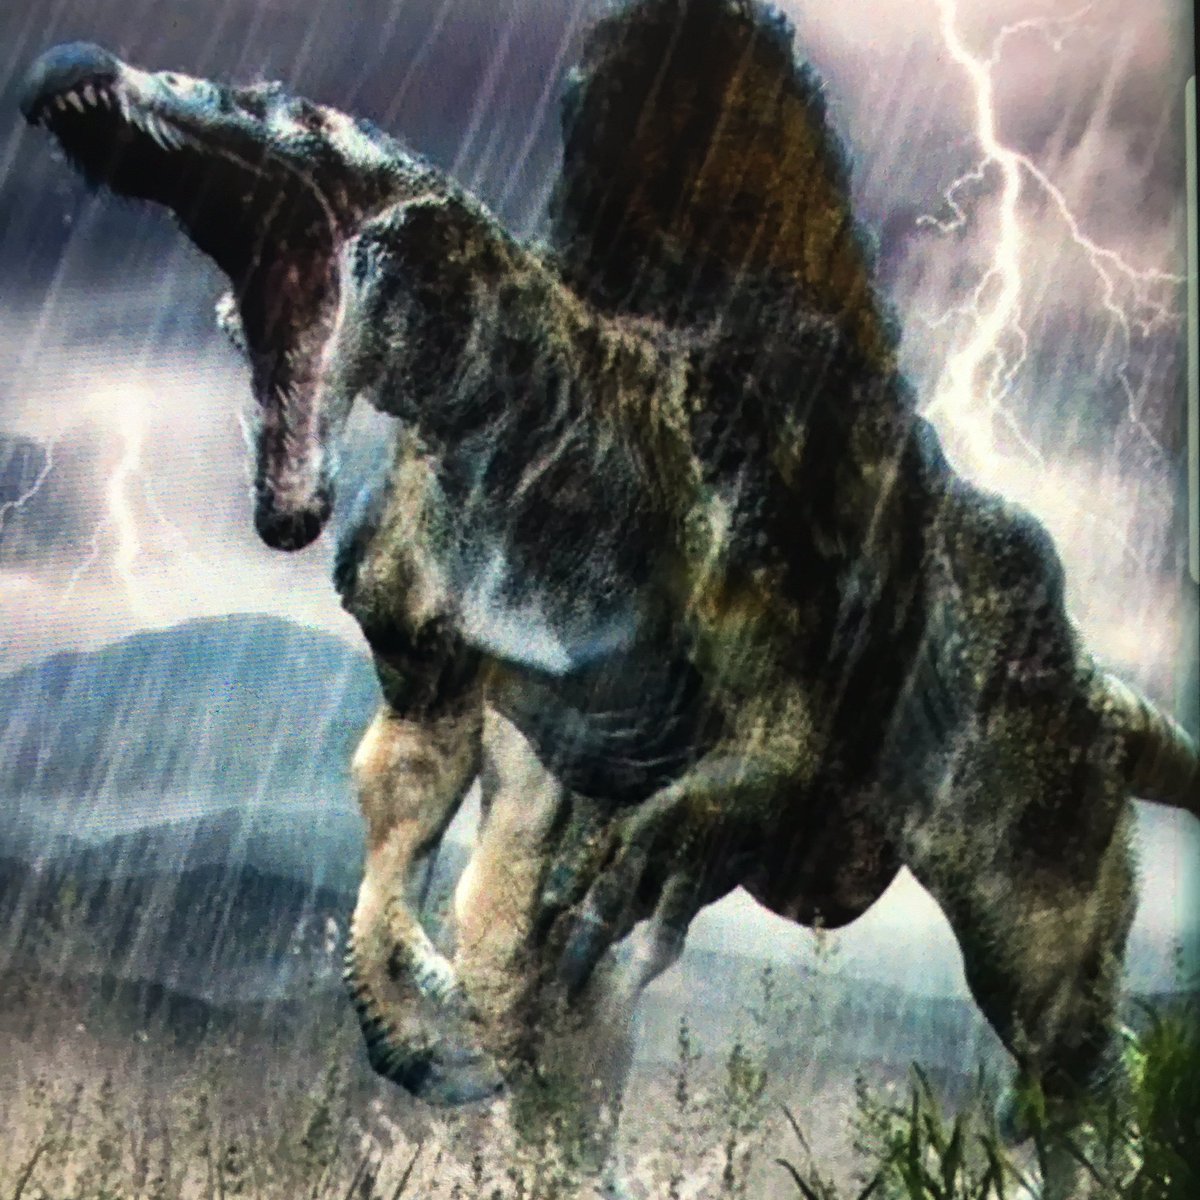 ট ইট র メガロドン 2番目にカッコイイ恐竜はスピノサウルスだなー T Co Olw9reurni ট ইট র